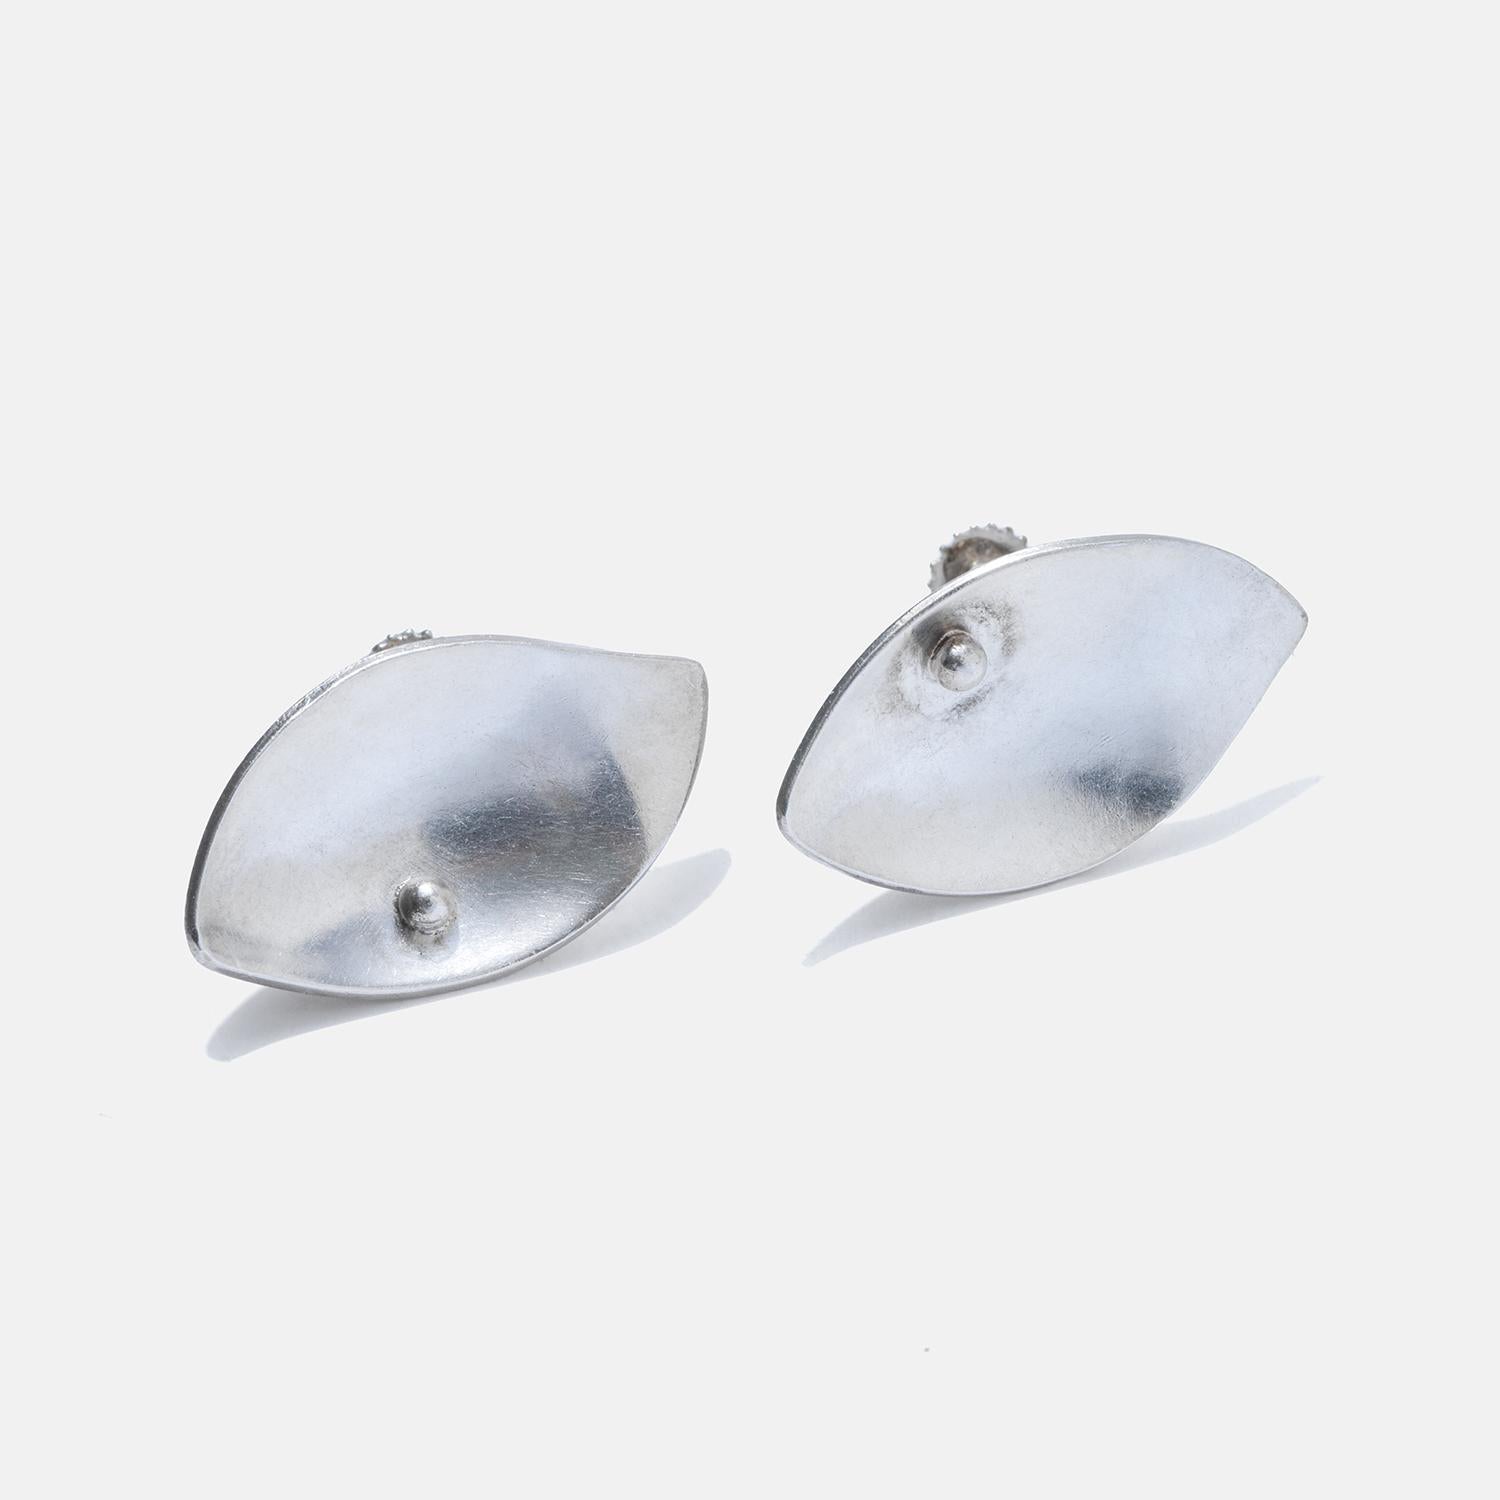 Diese Ohrringe aus Sterlingsilber haben ein elegantes blattförmiges Design mit einer glatten, reflektierenden Oberfläche. Die Ohrringe sind so gestaltet, dass sie bündig am Ohrläppchen anliegen und einen eleganten und dezenten Look erzeugen. Ihre